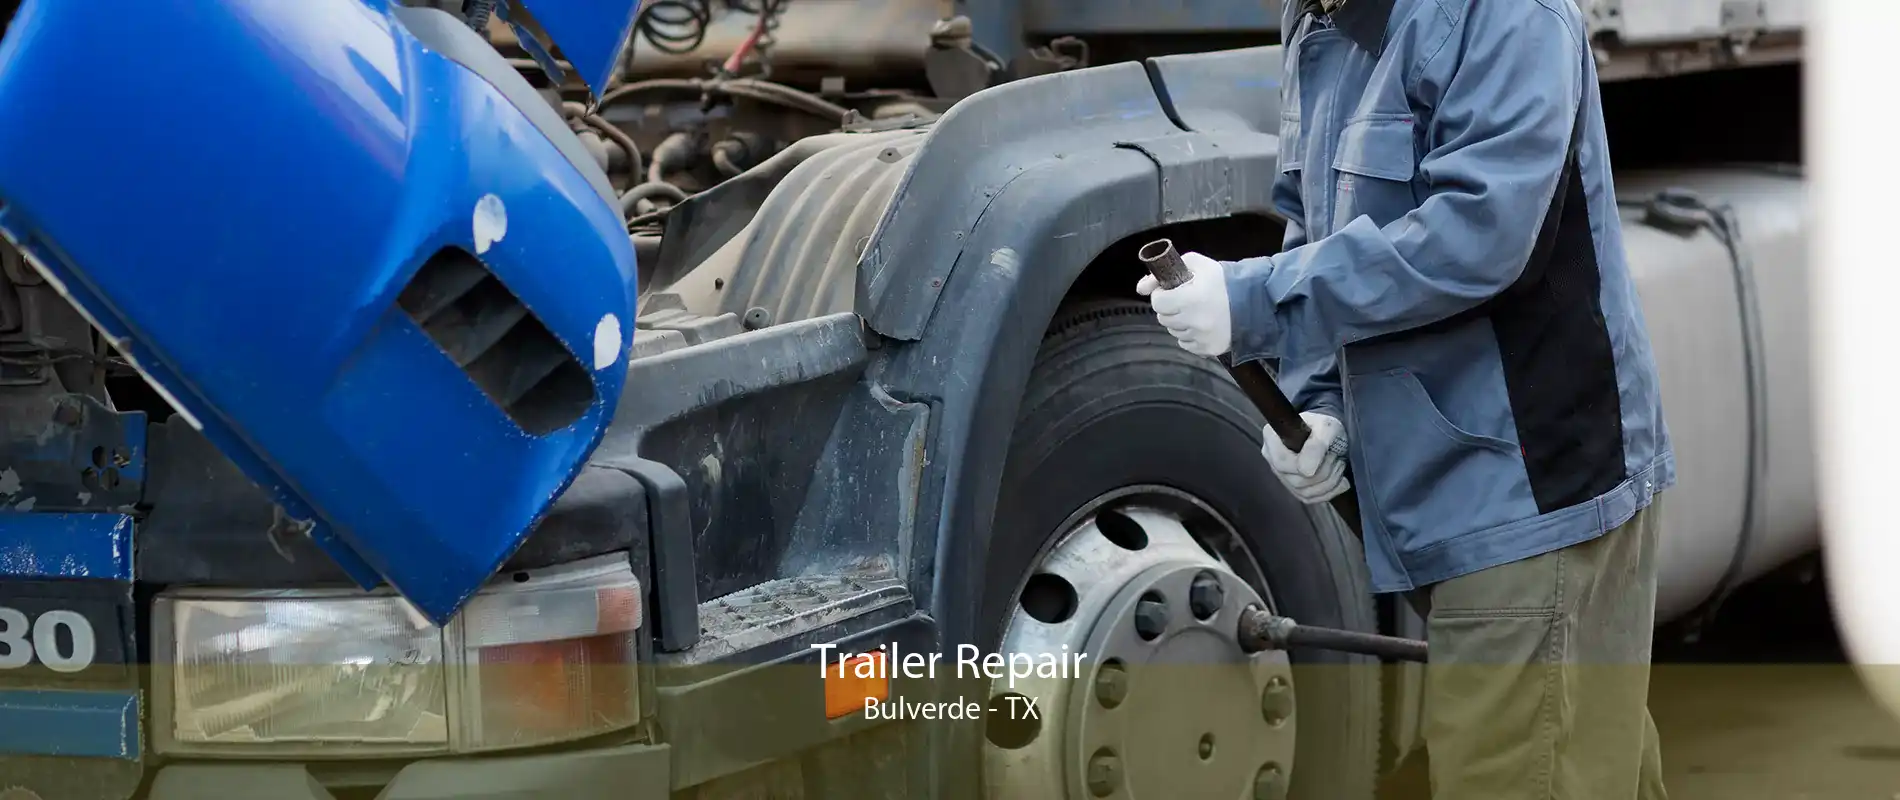 Trailer Repair Bulverde - TX